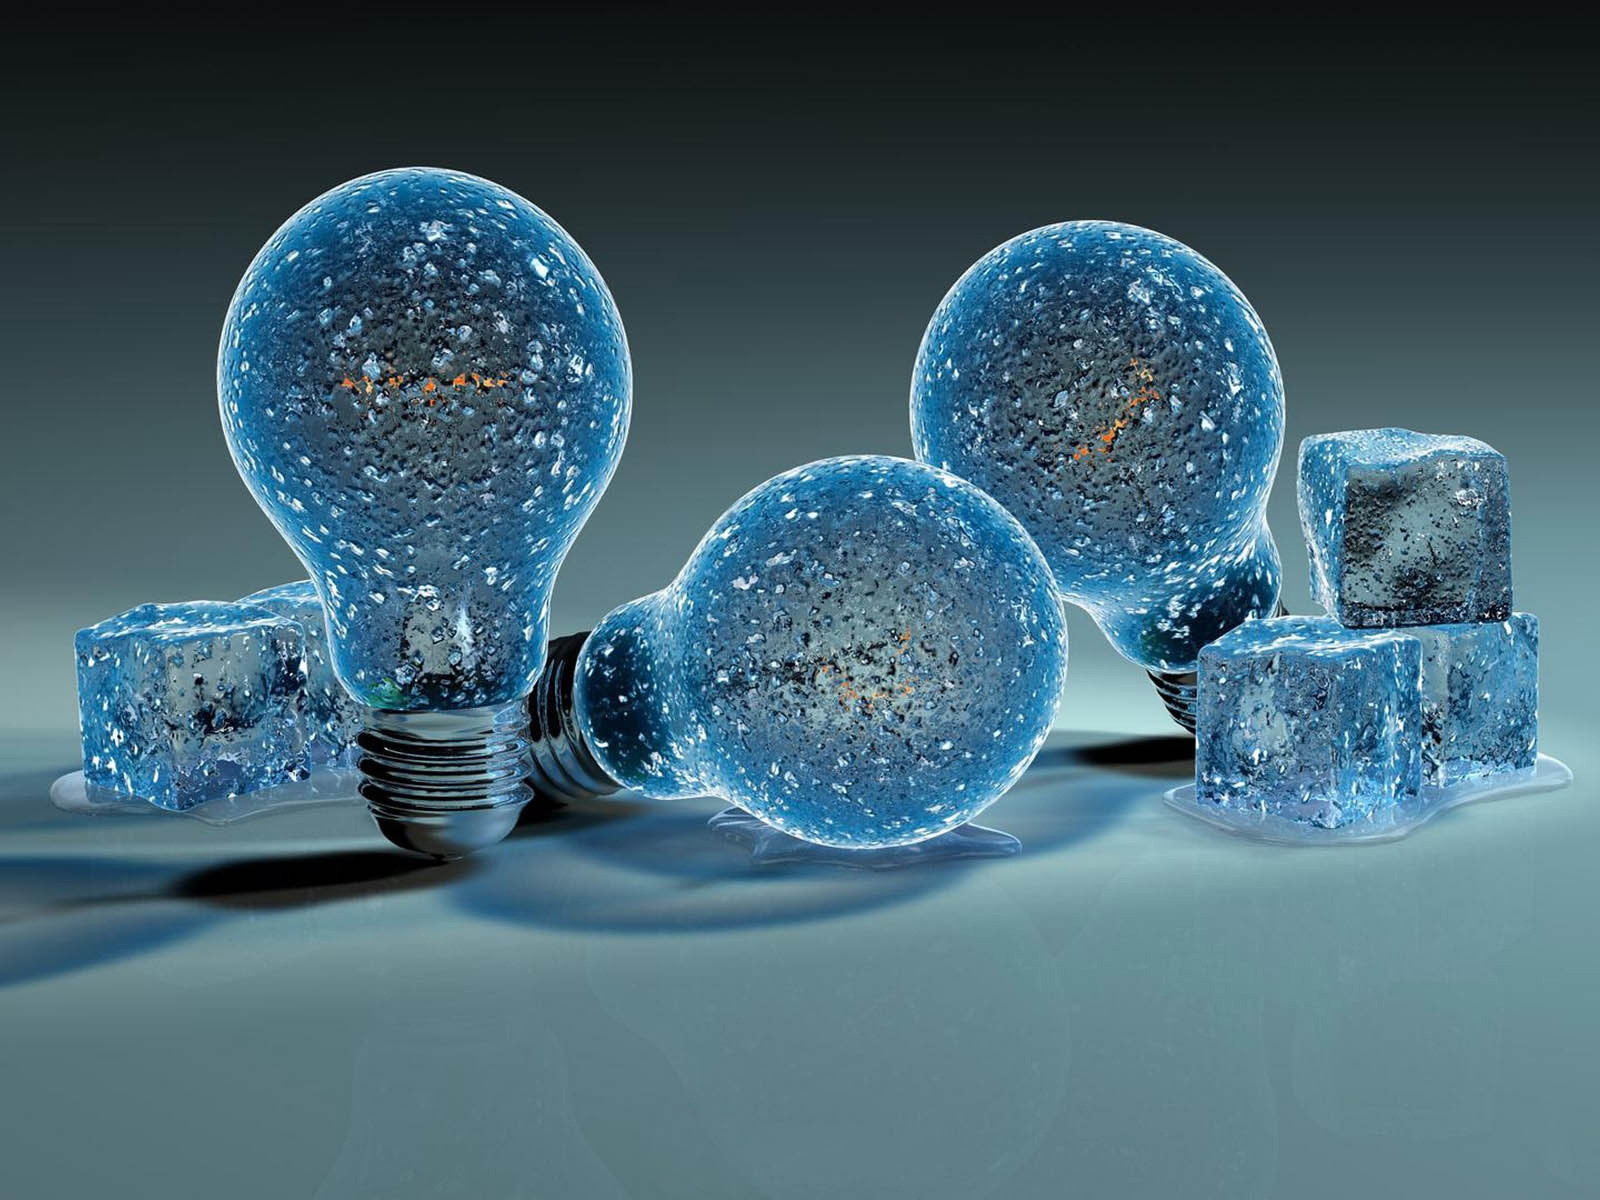 Iced Light Bulbs for 1600 x 1200 resolution